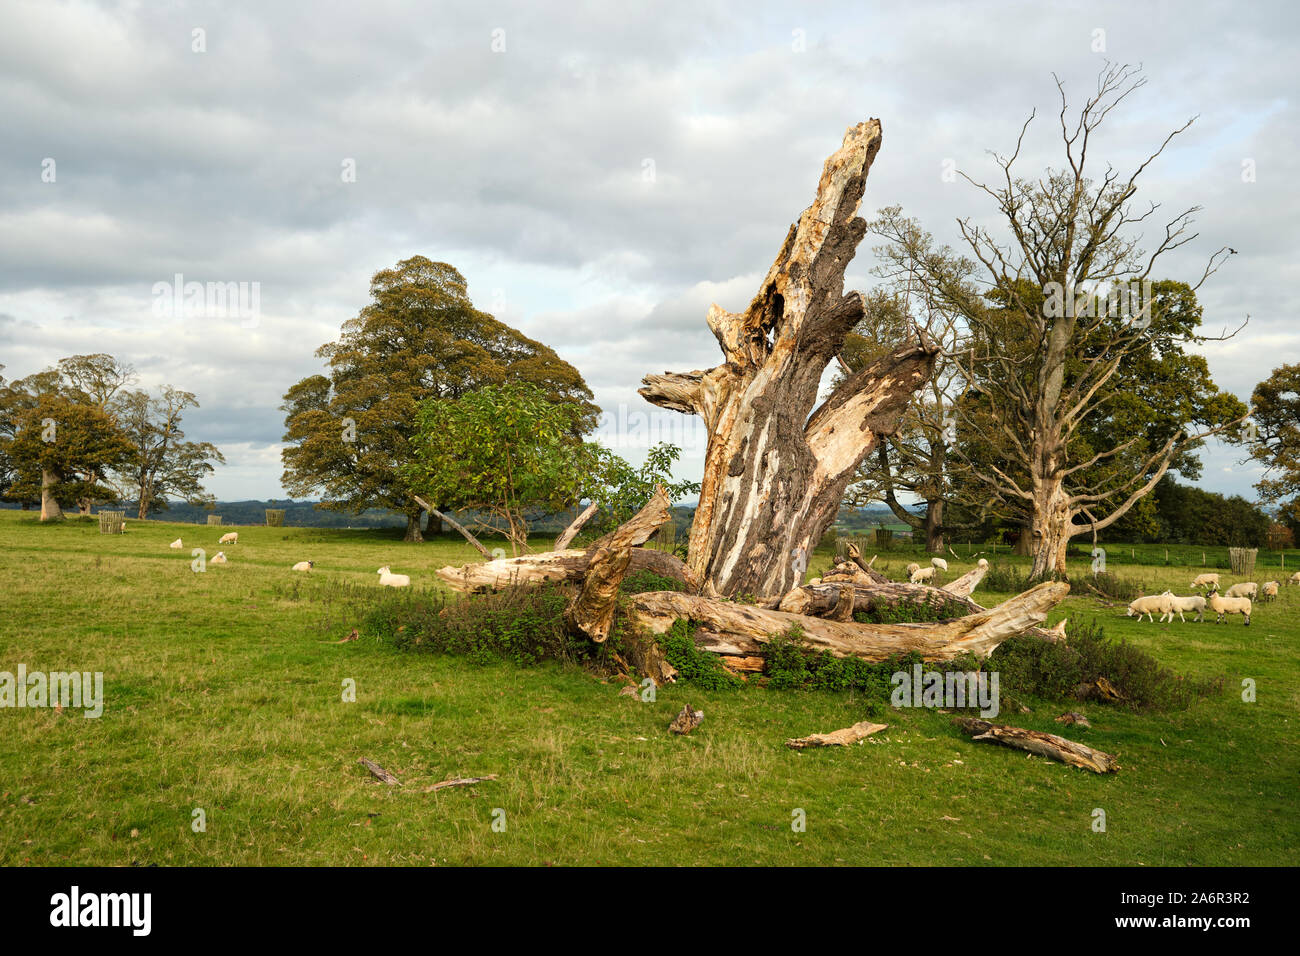 Caído árbol muerto en un parque cerca de Chirk en Gales con ovejas Foto de stock